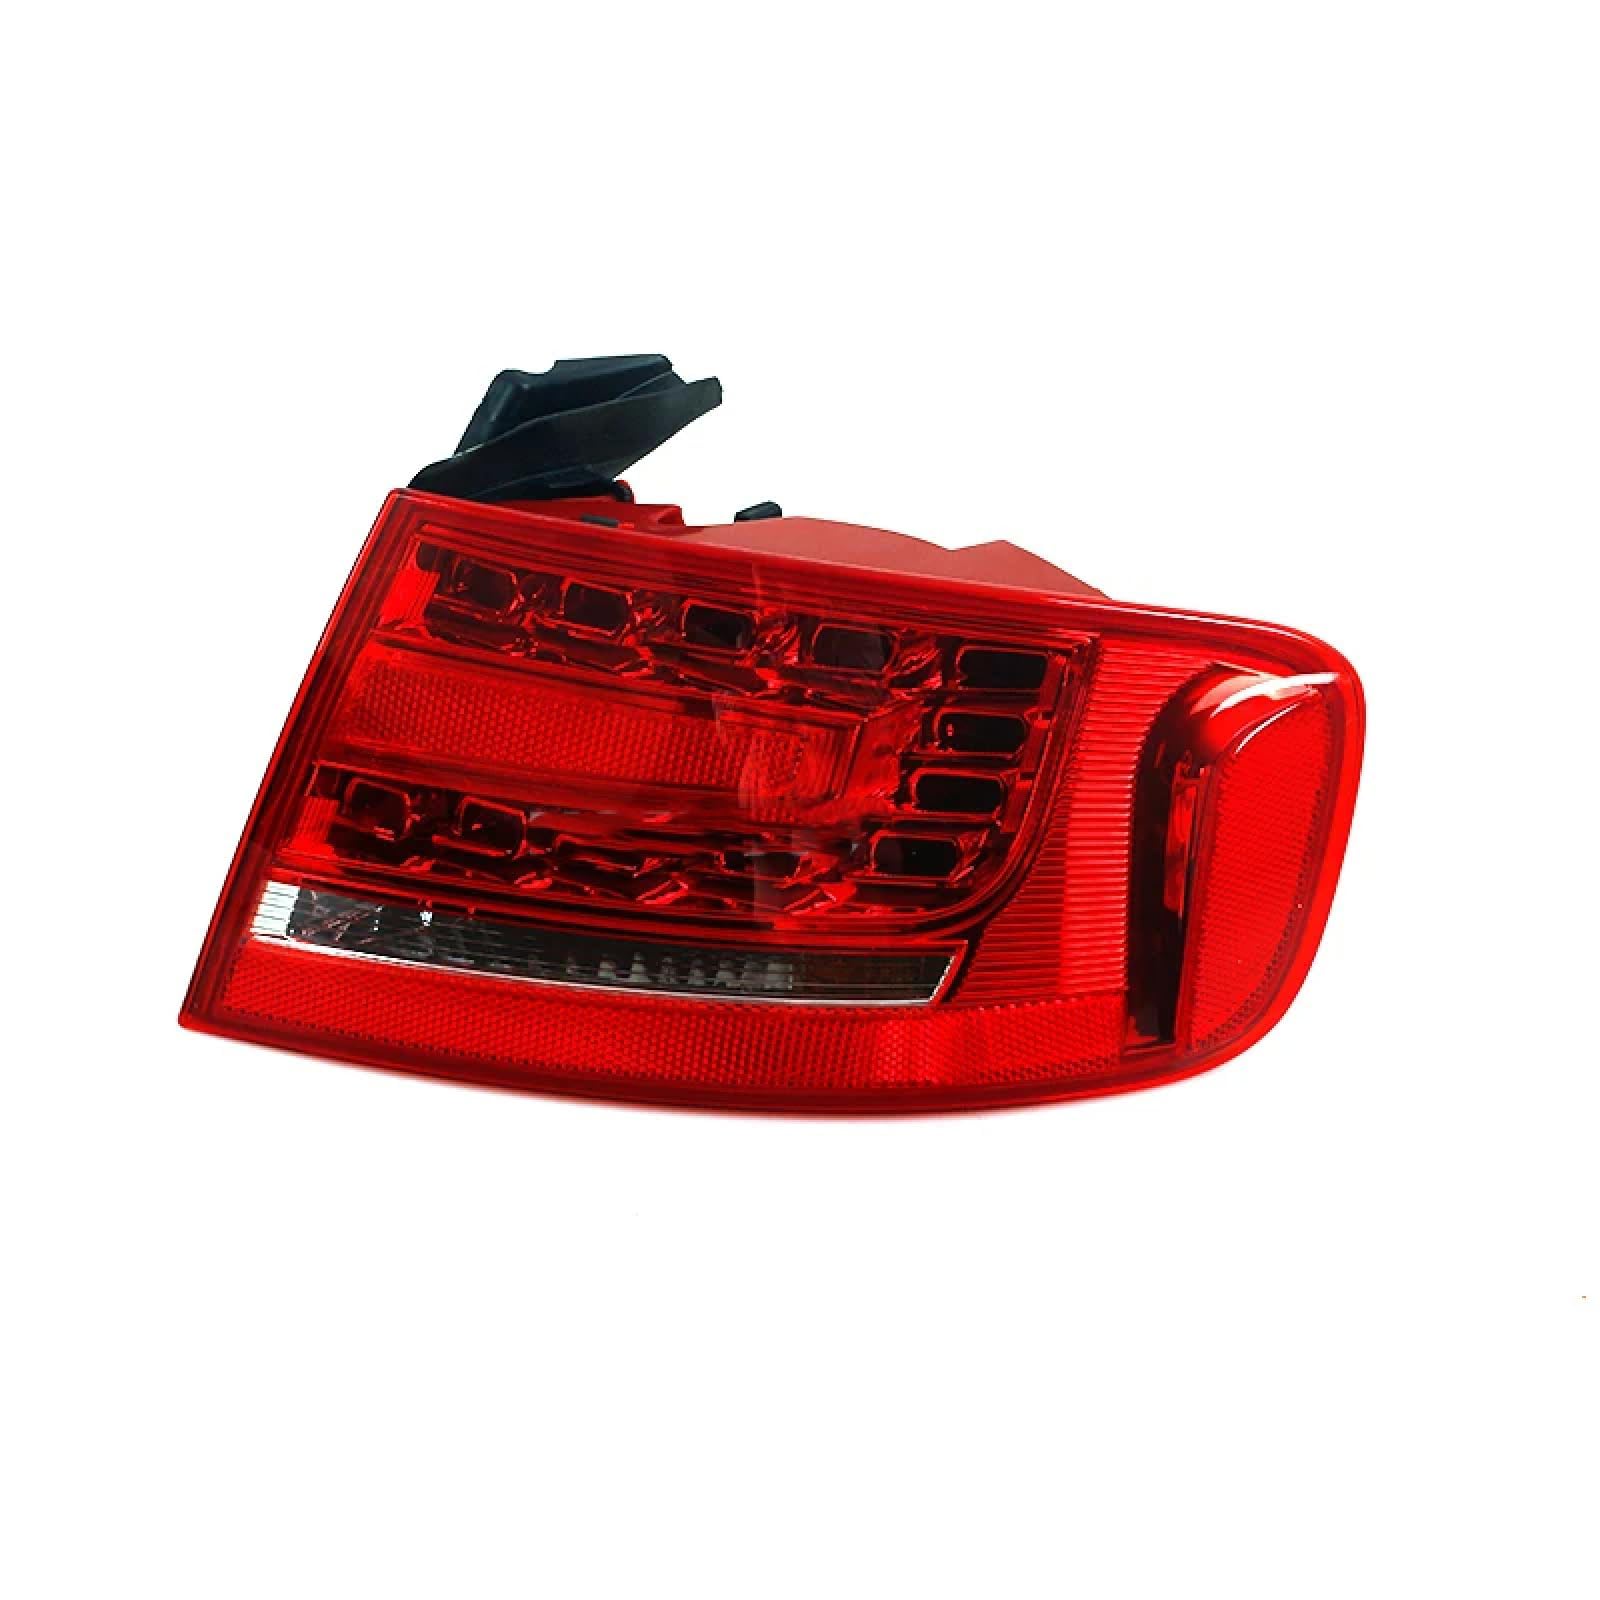 Auto Rückleuchten für Audi A4 B8 2008-2012,Multifunktion Heckleuchten Leuchten Blinklicht Wasserdicht Rücklicht,A/Outer Right von IWAGH